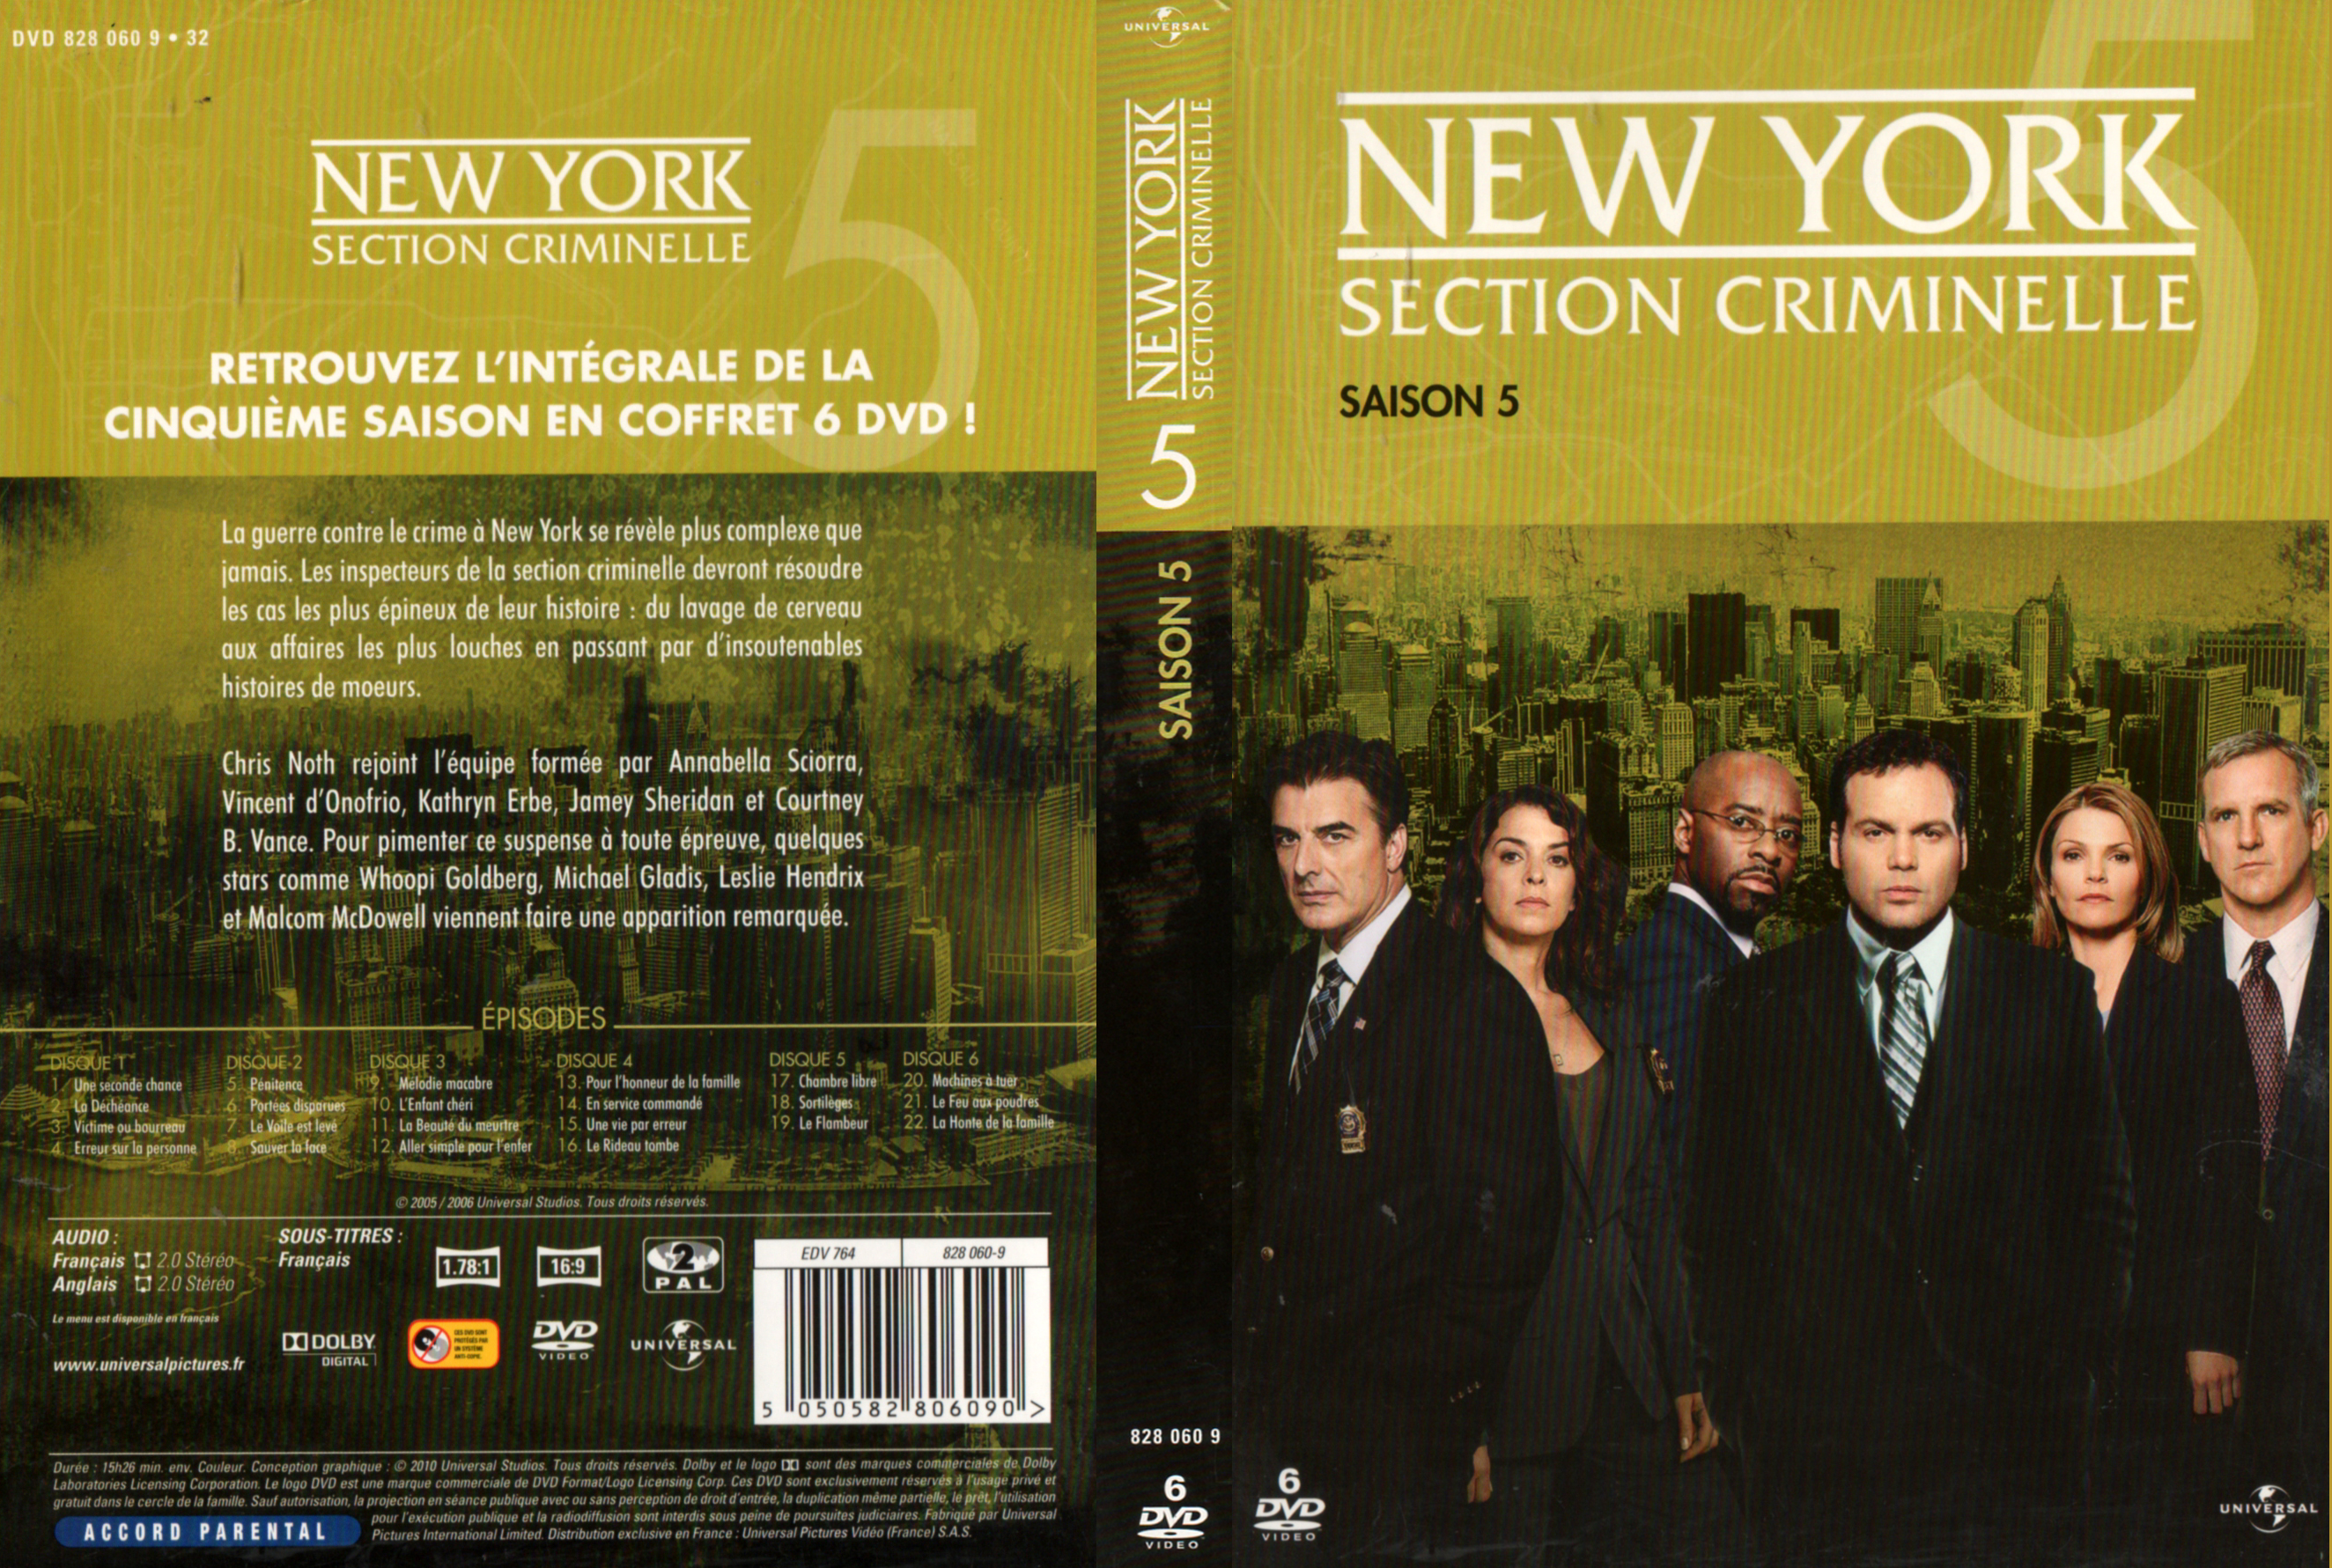 Jaquette DVD New york section criminelle saison 5